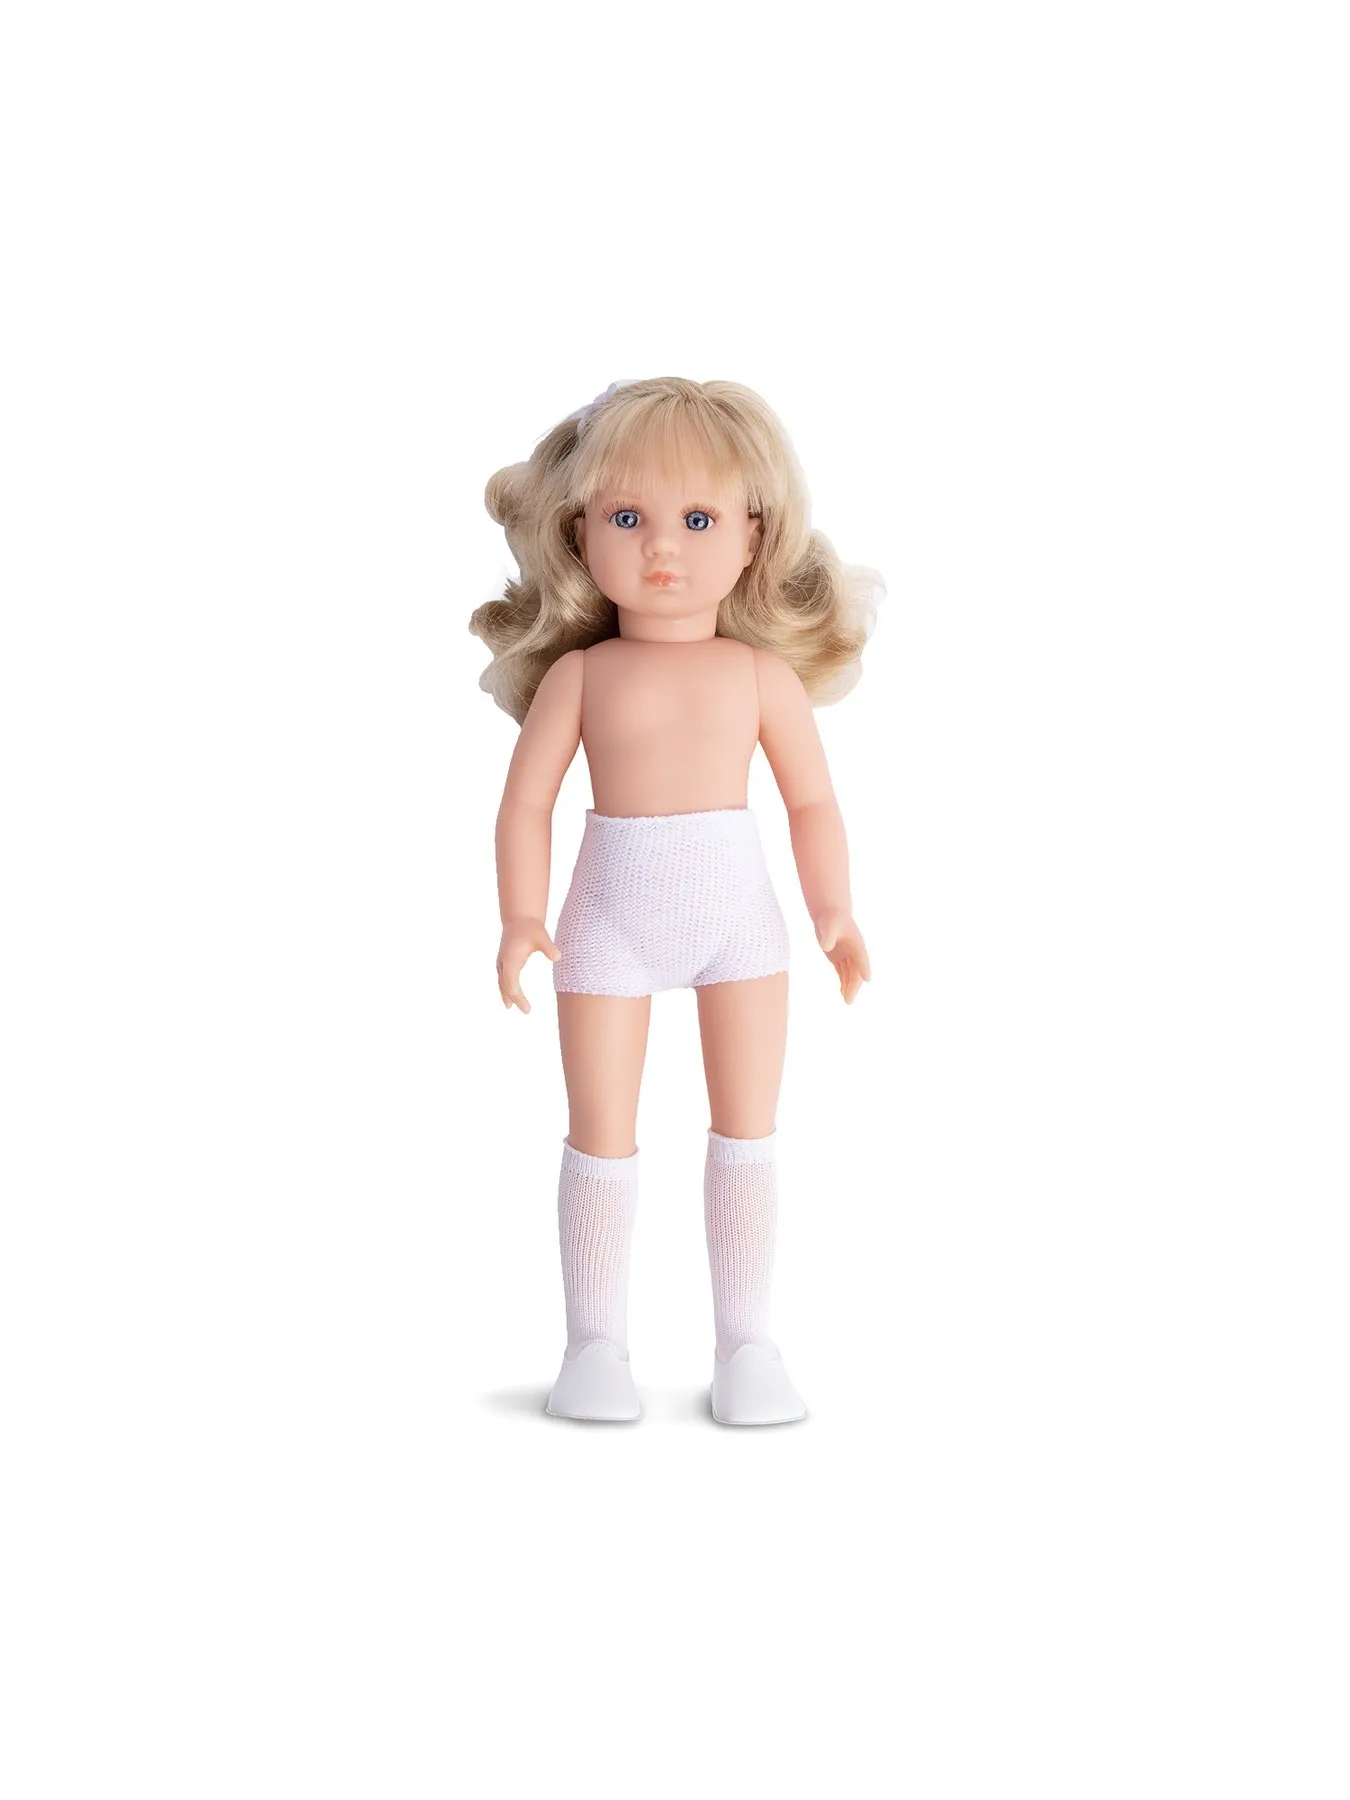 Puppe mit blonden Haaren